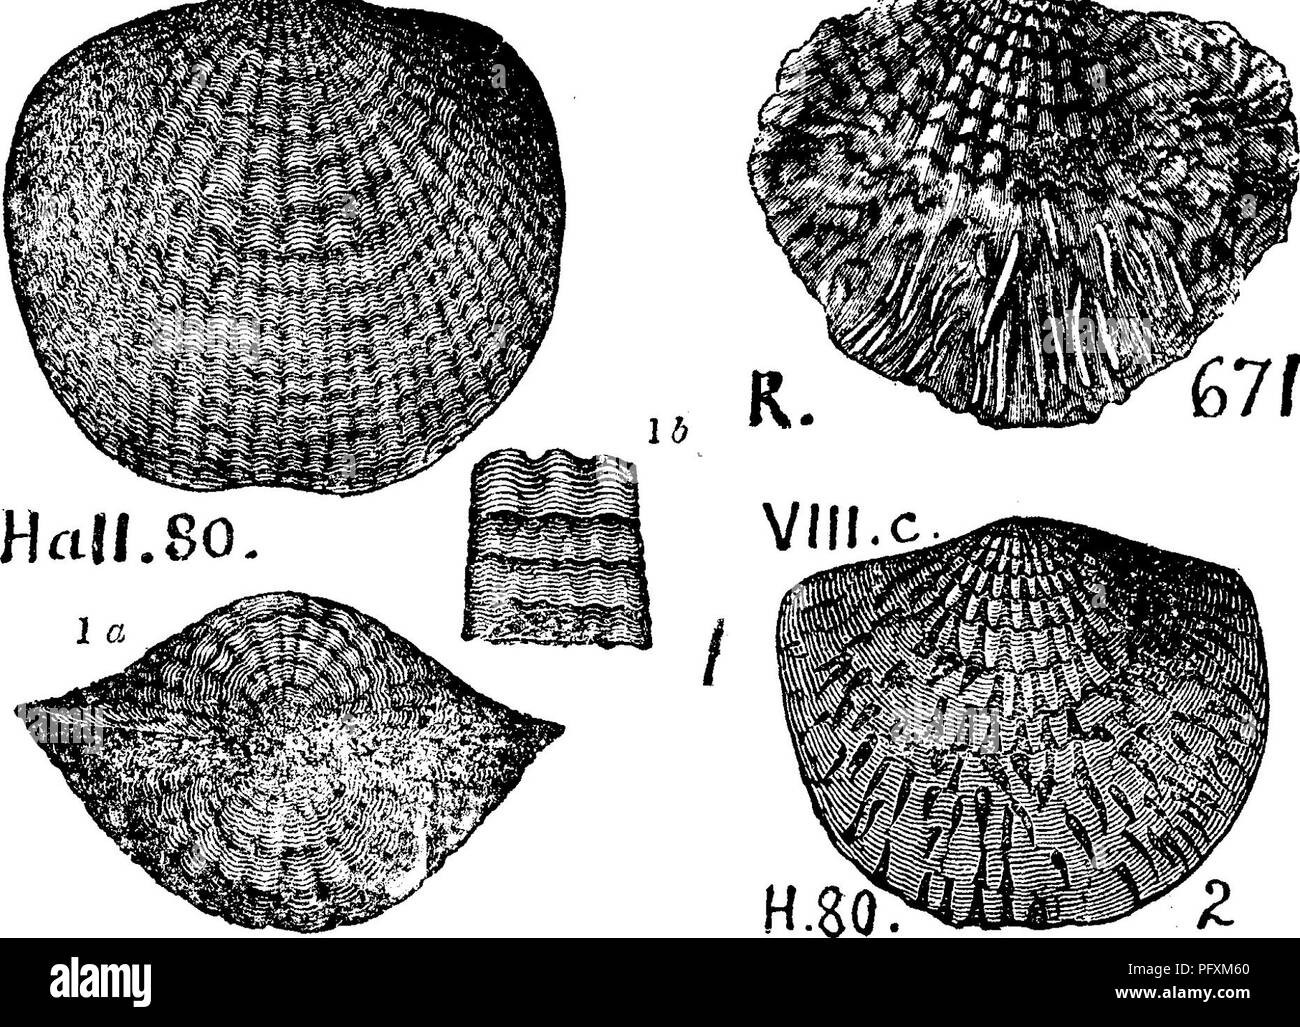 . Un dictionnaire des fossiles de la Pennsylvanie et les états voisins nommés dans les rapports et les catalogues de l'enquête ... La paléontologie. 53 UN ESSAI.. Groupe communautaire Atrypa ( Terebratula aspera aspera). Hall, rapport, W. D. Jl cj^^ rn Vine.  ^s^ ^^^^^^' v g yiti^^^^^» m =5^ ,...... 200, fig. 80,1, la, 15,2, Rog- ers, page 828, fig. 671, zéro G. Hamilton f^jf formulaire à l'ion. ''(Comparer Mühlhausen's fig. de 1813 dans Petrifac turkunde,-) - CI ay pol e , Perry Co., Pa. Rapport F 2, préface, VIIIc. La formation de Hamilton. Dans l'est de la Pennsylvanie, Monroe Co., MarshalPs falls, rapporté par H. D. Rogers. Par I. C.blanc comme A. spinosa^ Banque D'Images